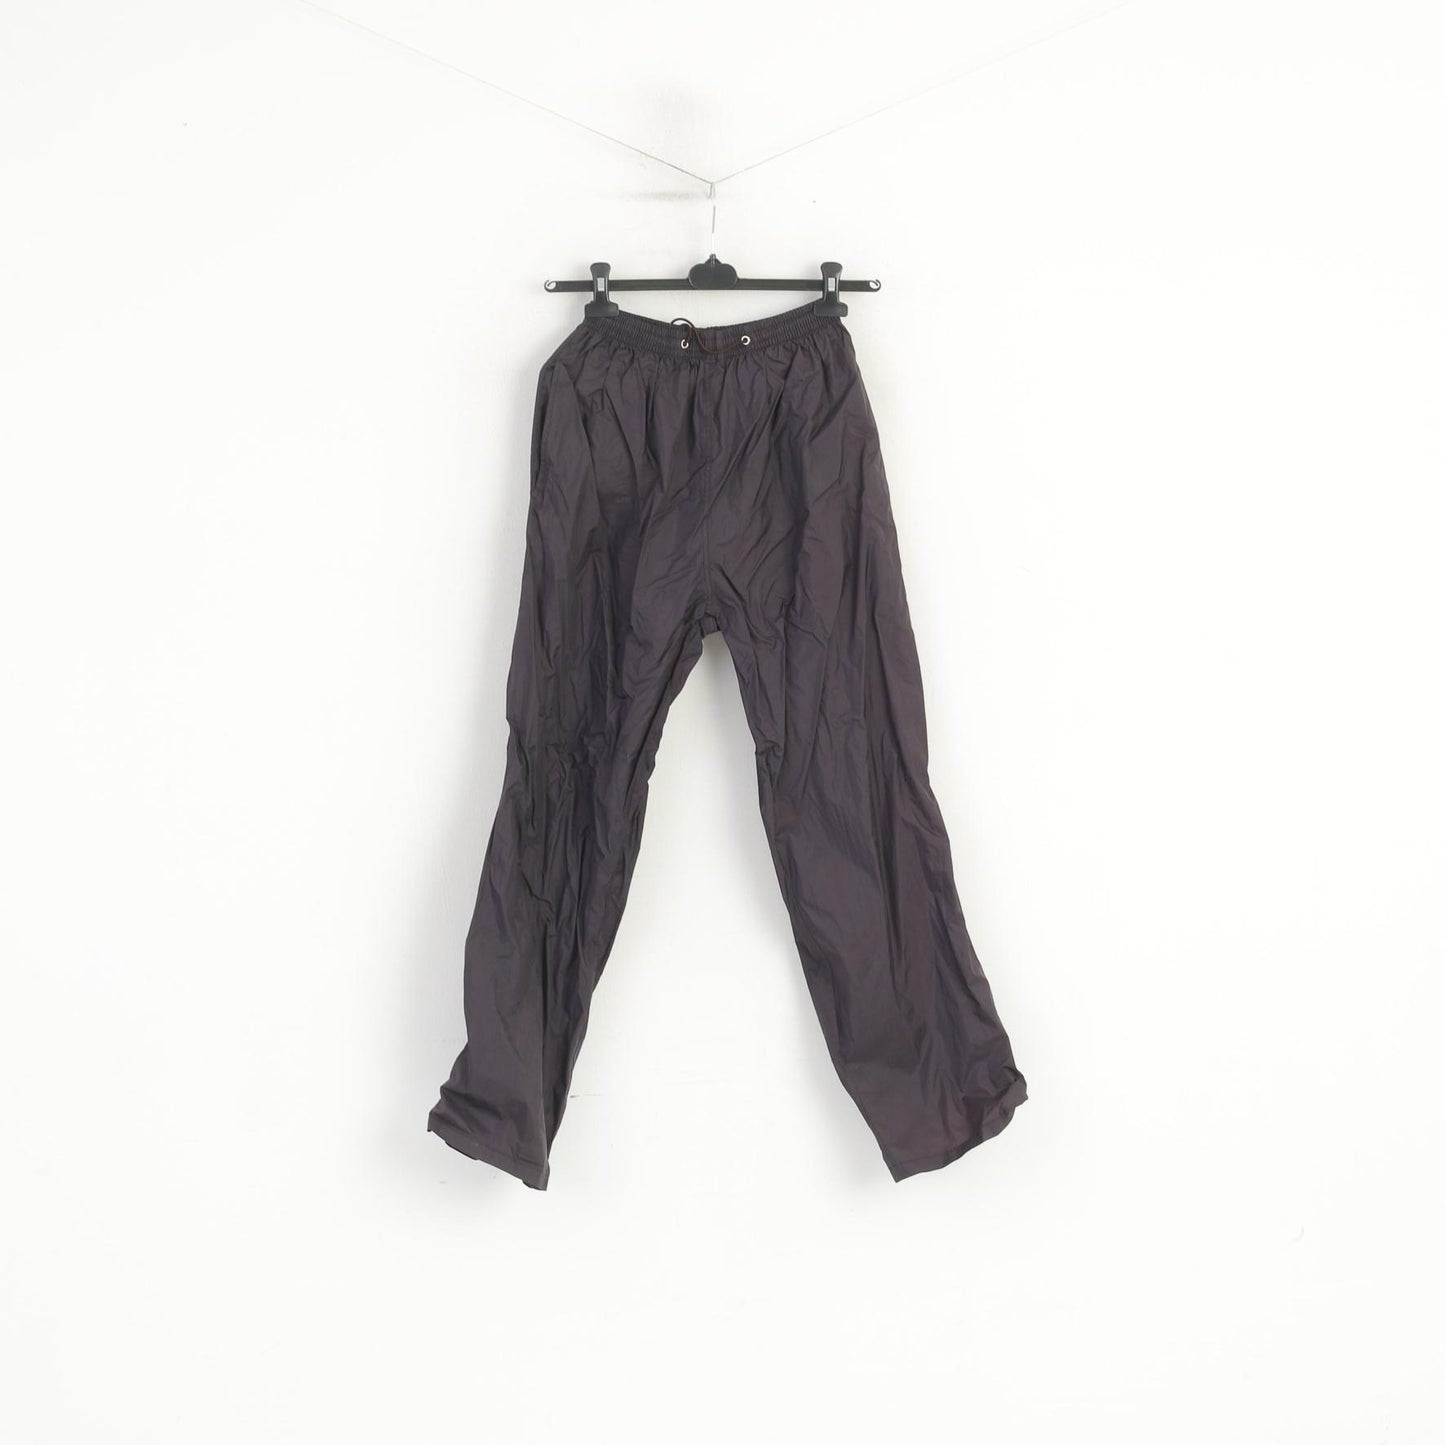 Vintage Men S Trousers Black Purple Gloss 100% Nylon Waterproof Outdoor Ligtweight Pants